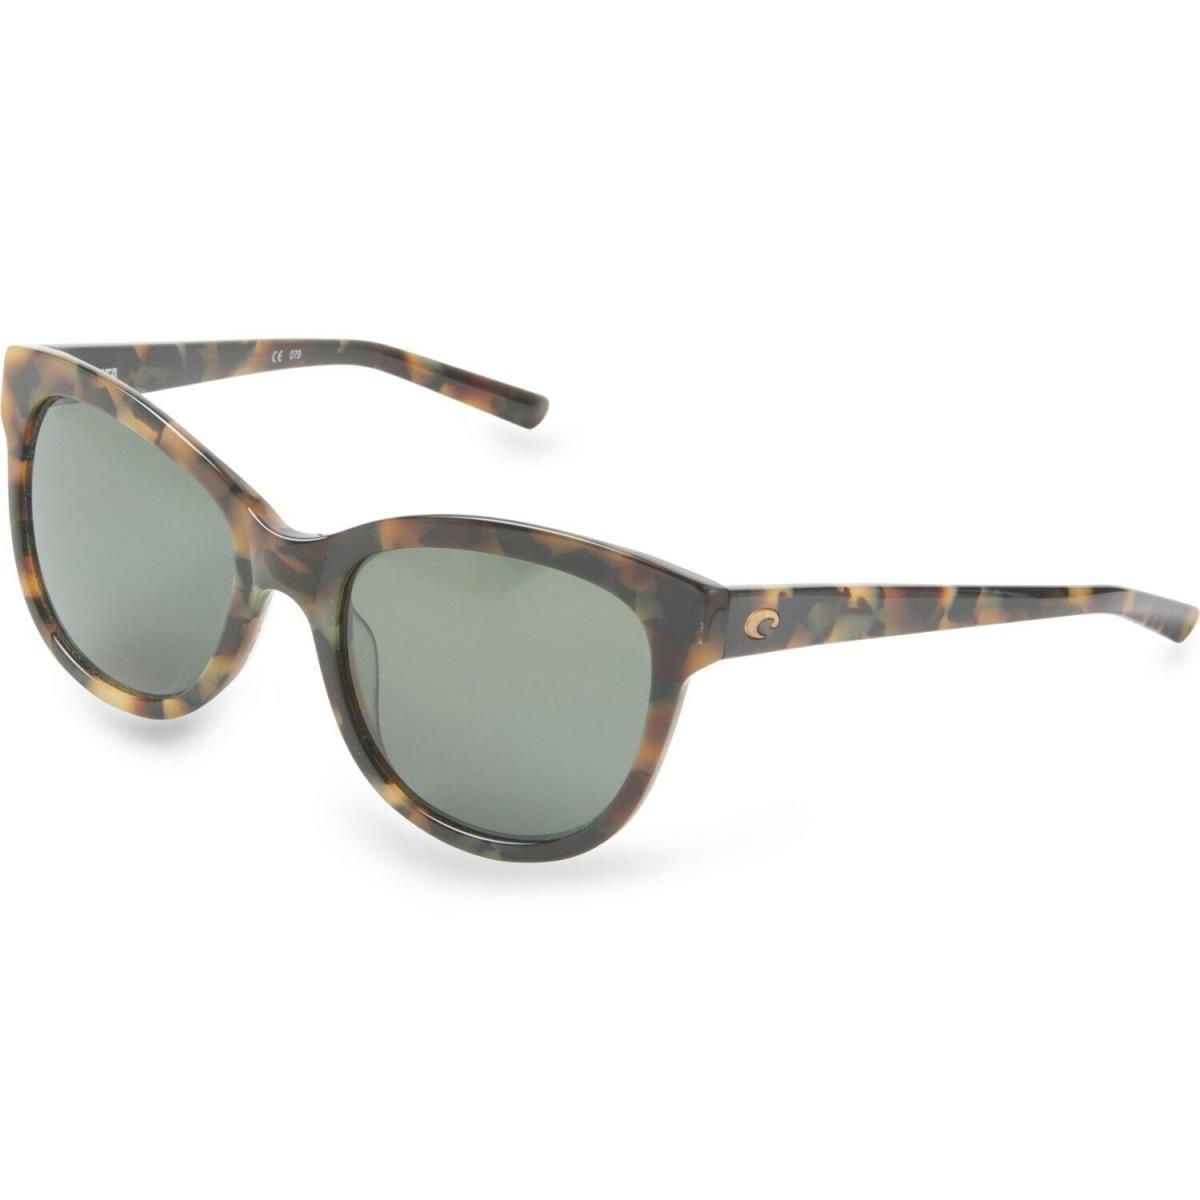 Costa Del Mar Bimini Women`s Sunglasses - Polarized - Multicolor Frame